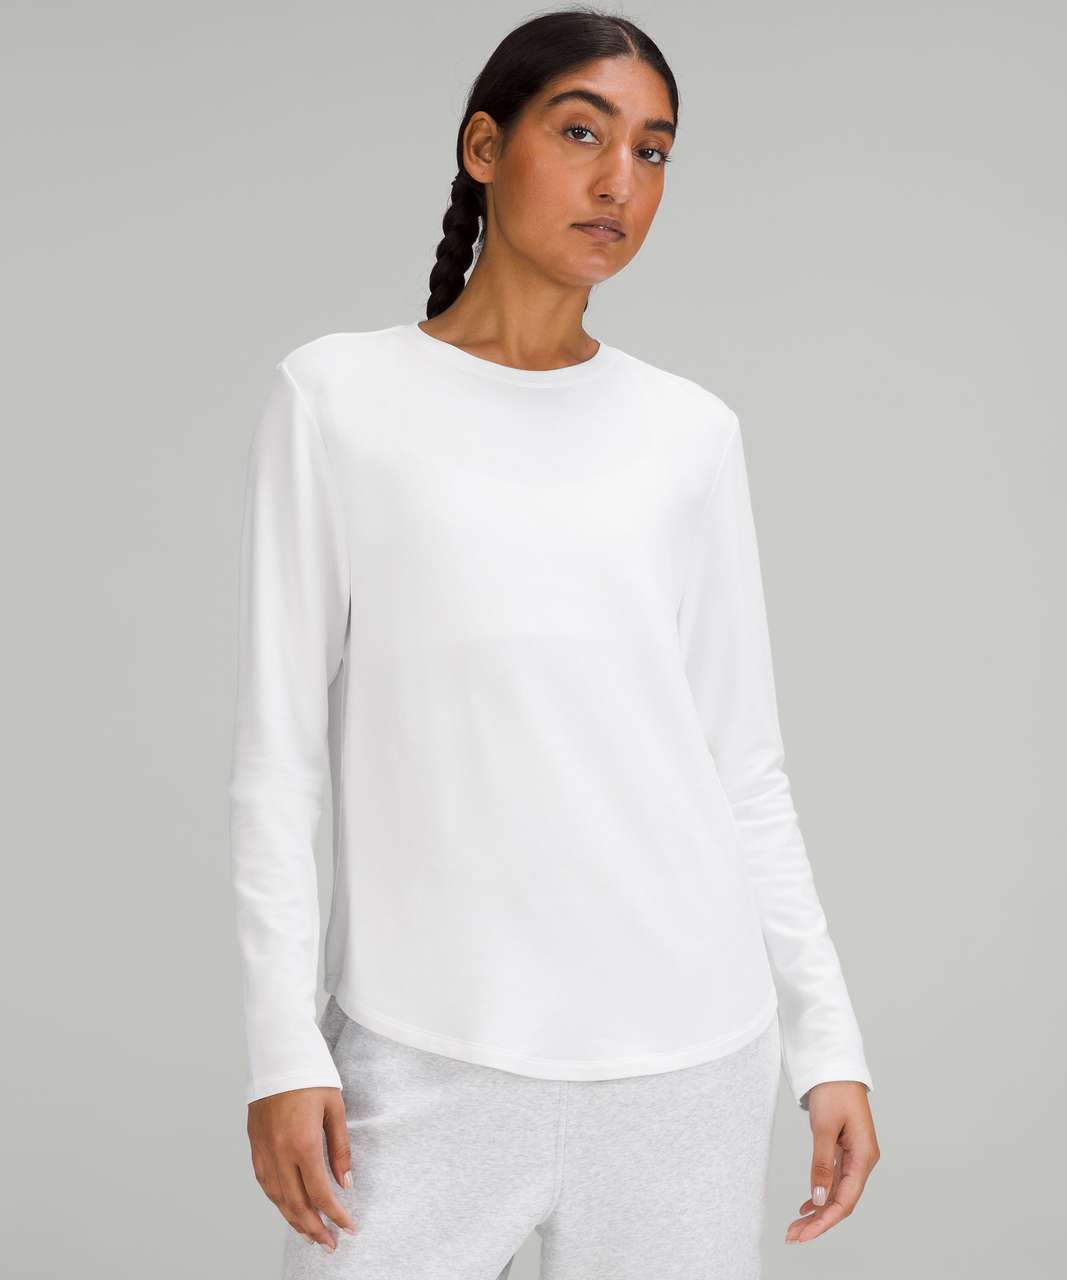 Lululemon Love Modal Fleece Long-Sleeve Shirt - White